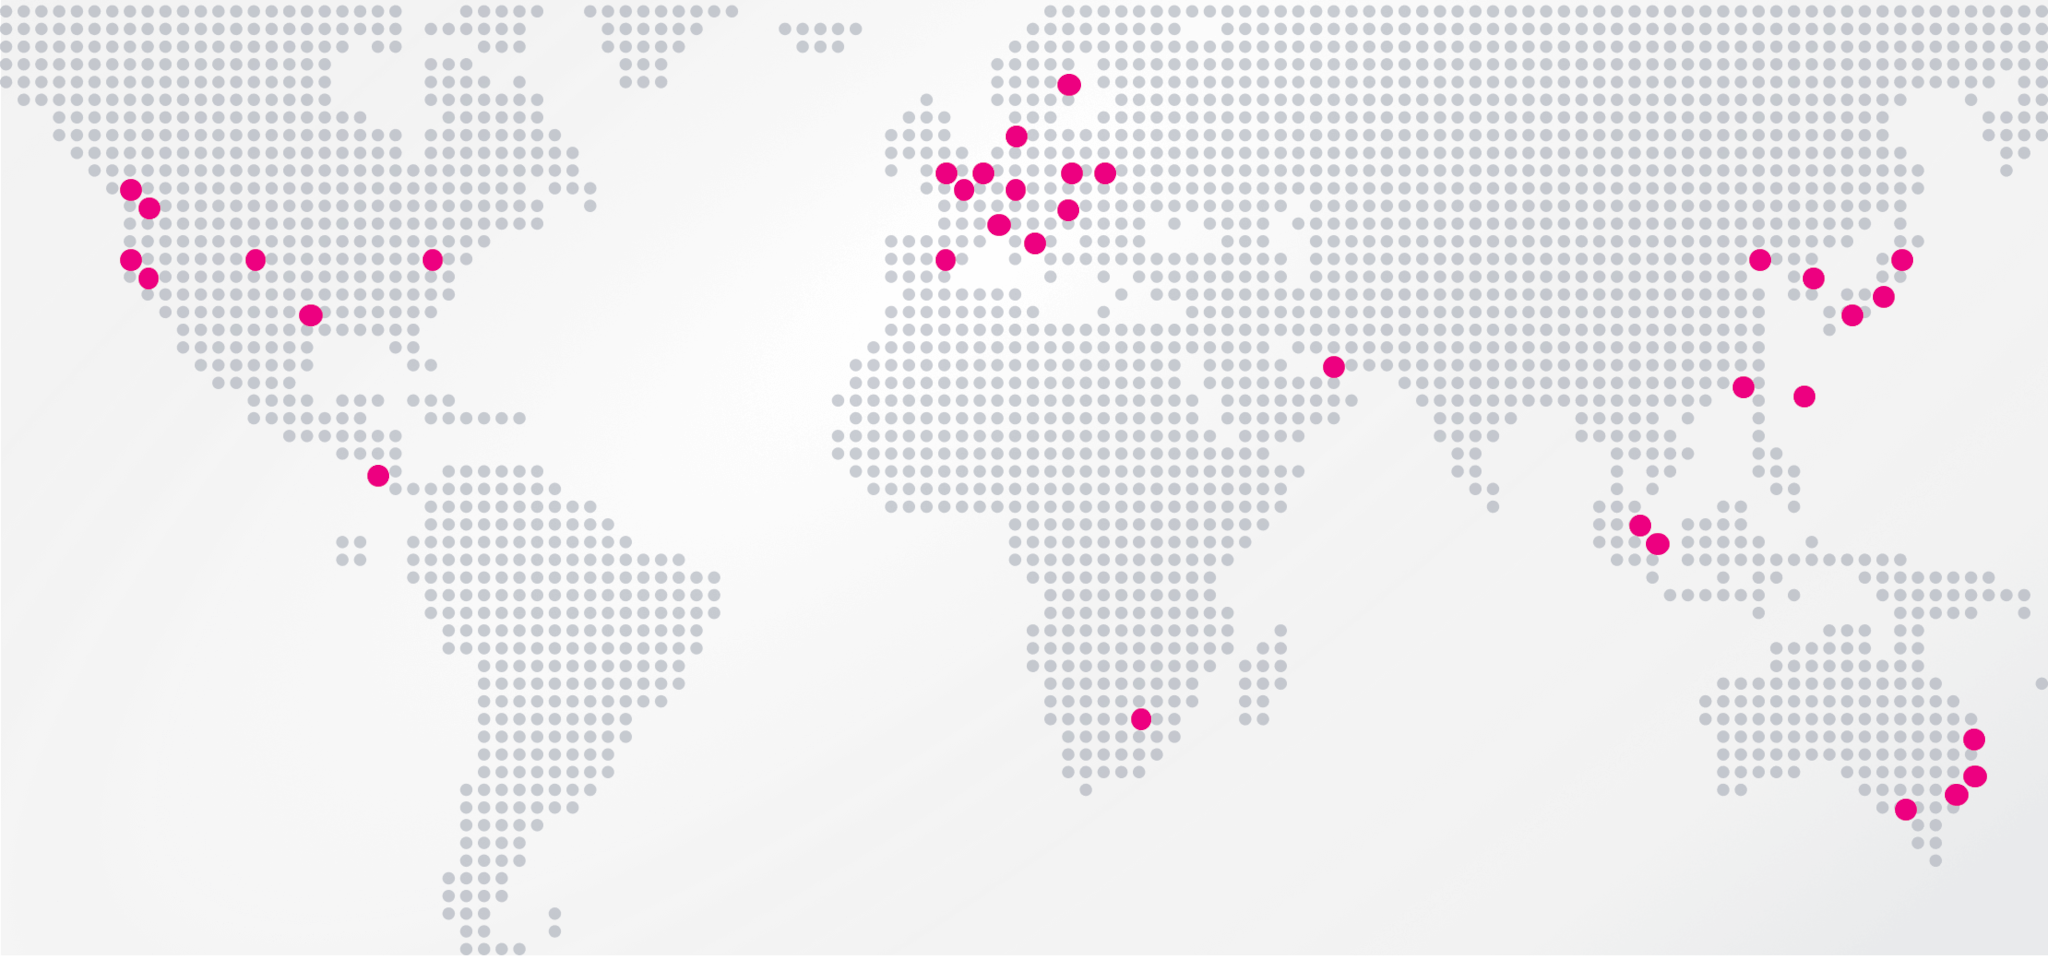 Une carte affiche les bureaux Splunk à travers le monde : plus de 30 emplacements sont mis en évidence à l’aide de points rouges en Amérique du Nord, en Europe, au Moyen-Orient, en Afrique, en Asie et en Australie.